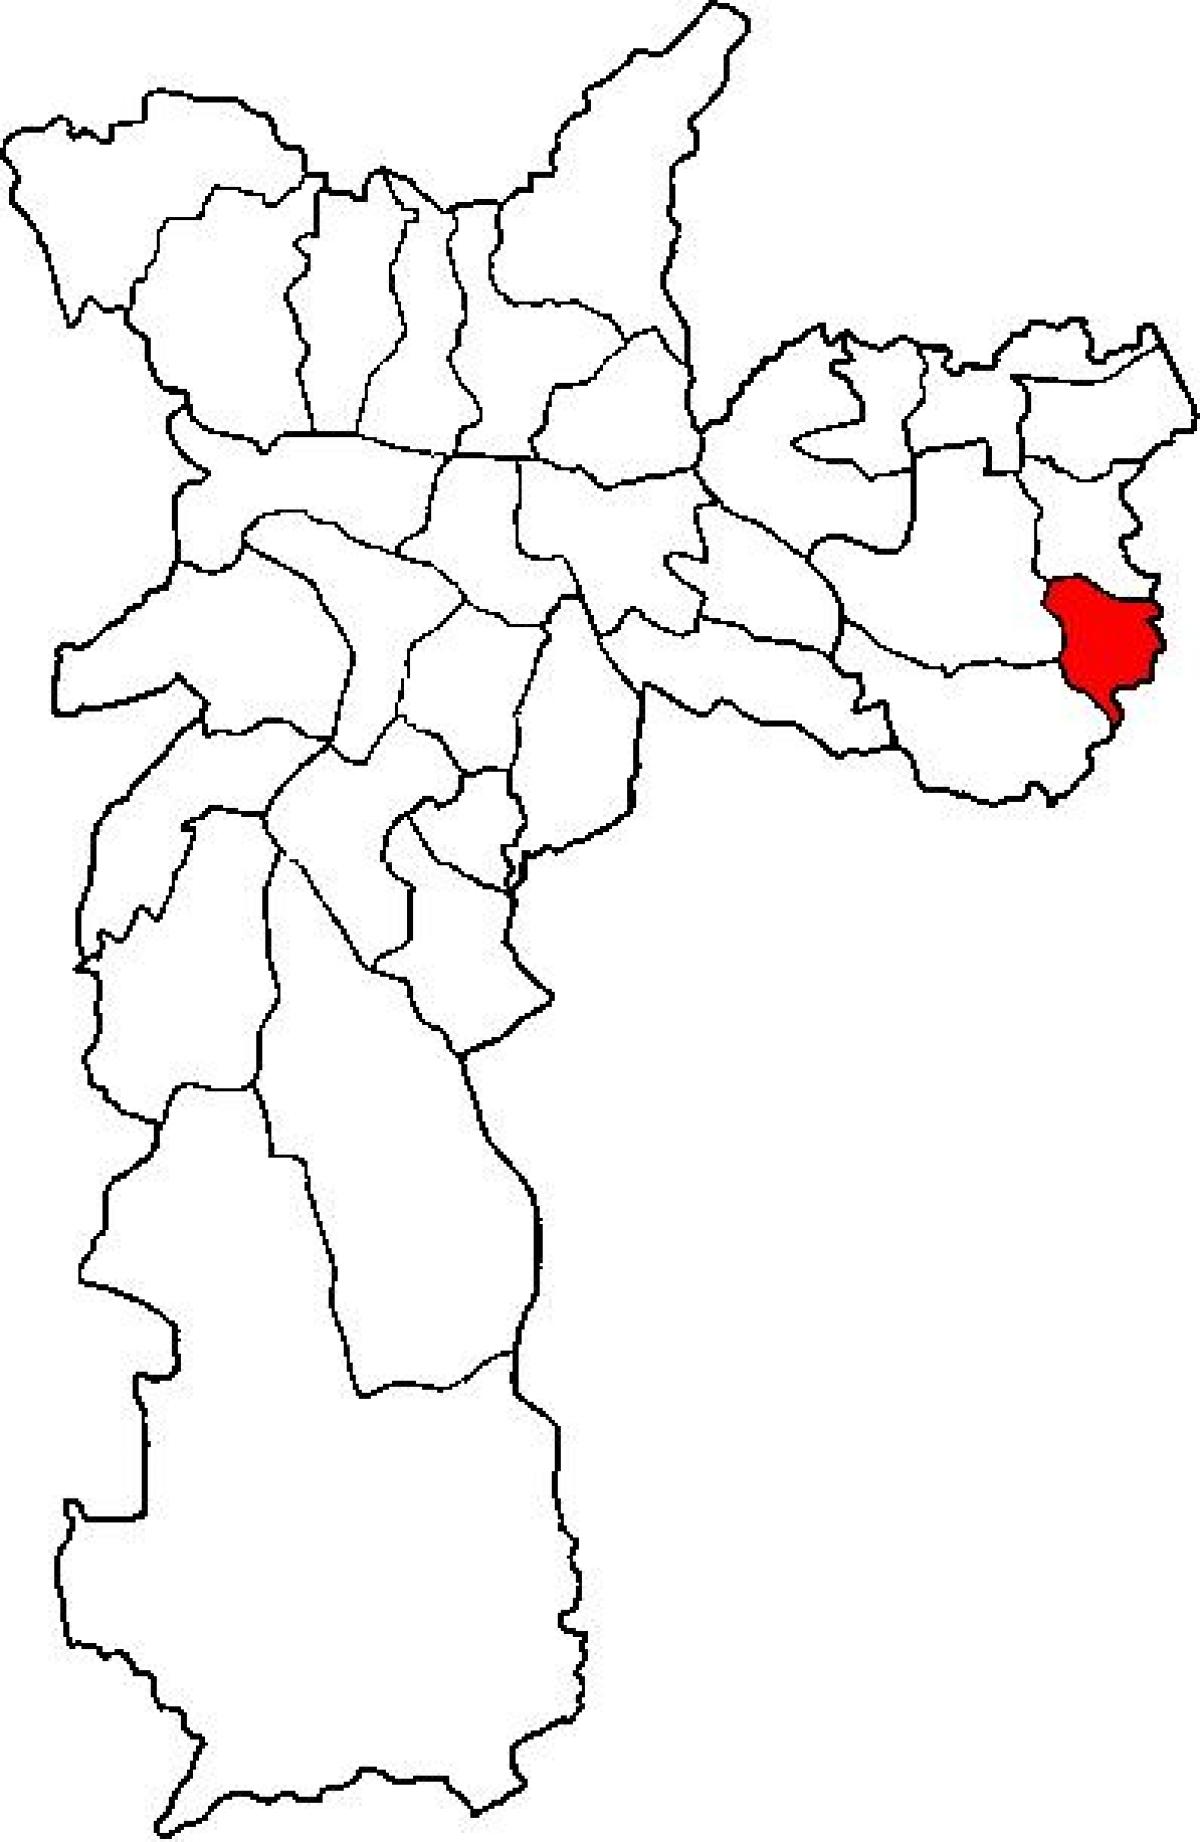 Kort over Cidade Tiradentes-sub-præfekturet São Paulo